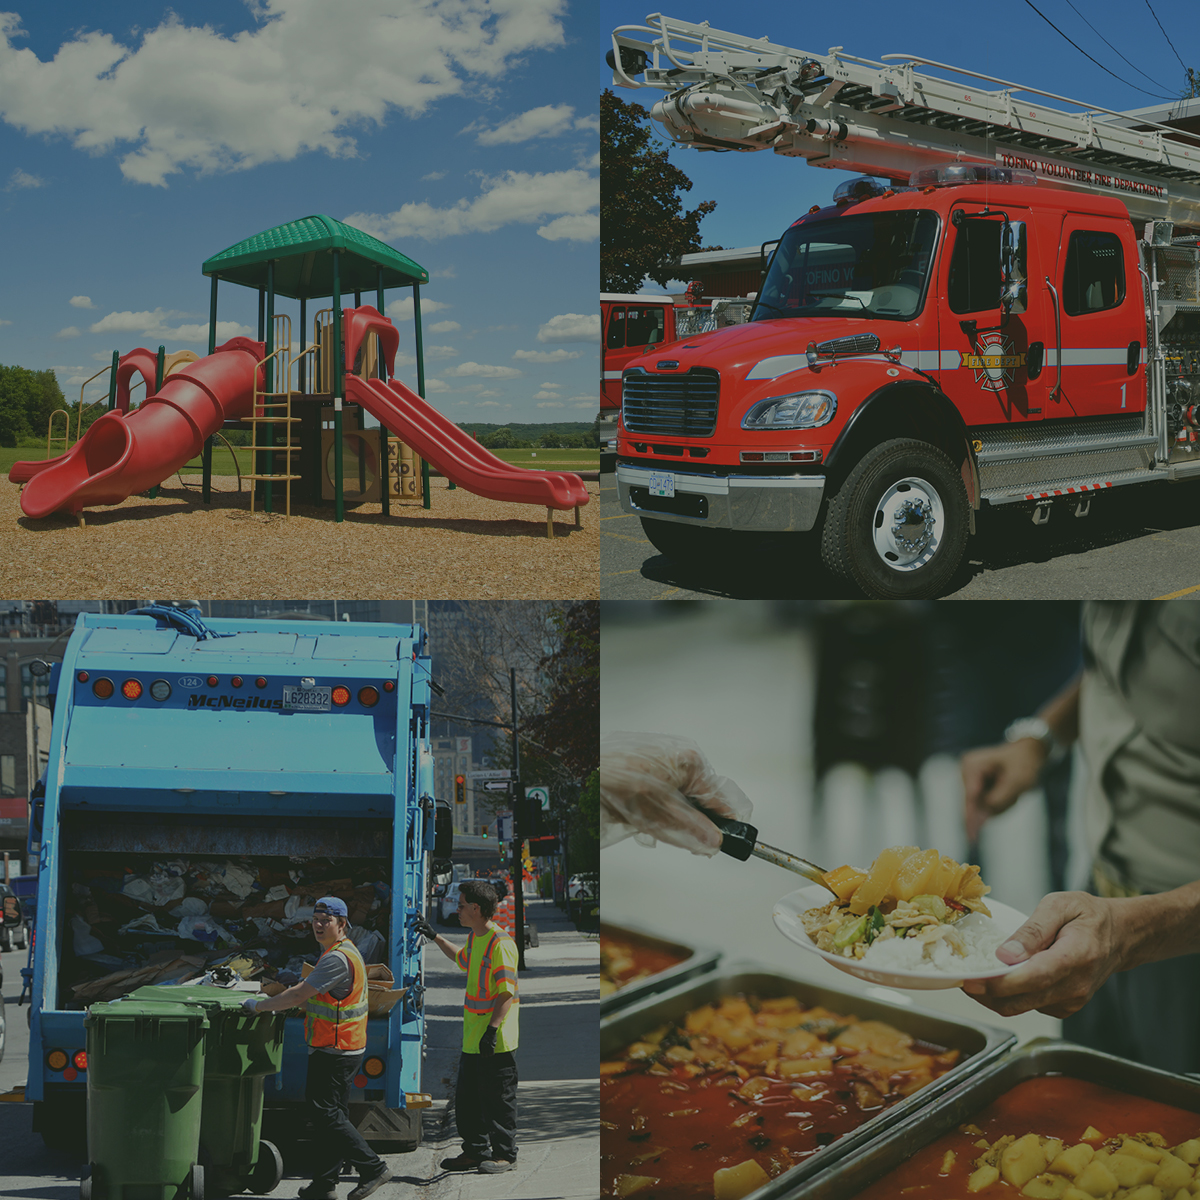 Collage d'images représentant quelques services communautaires comme nourrir la communauté, ramasser les ordures, camion de pompier et parcs public pour enfants.